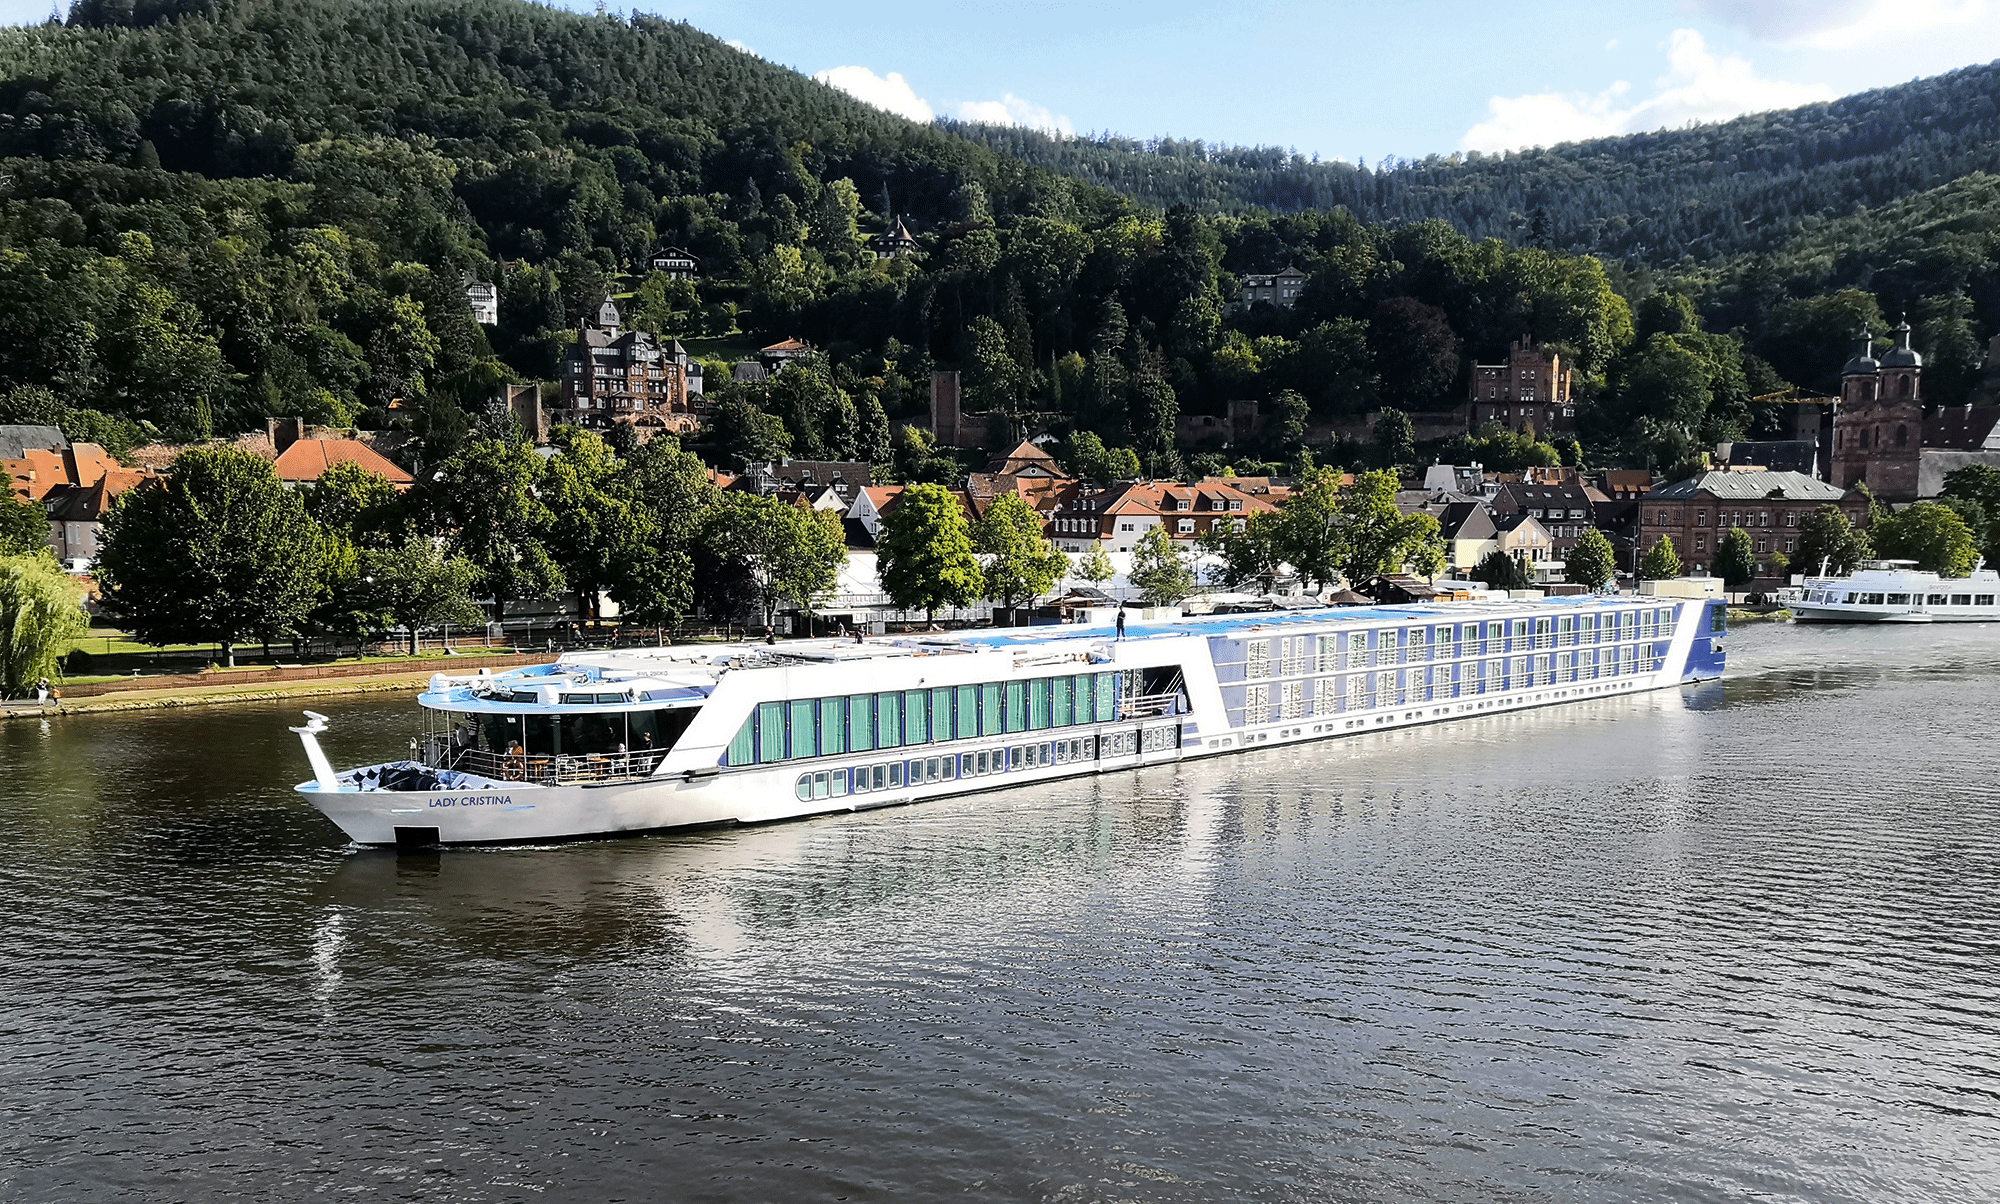 M/S Lady Cristina 14 Tage Große Europareise auf der Donau bis zum Delta